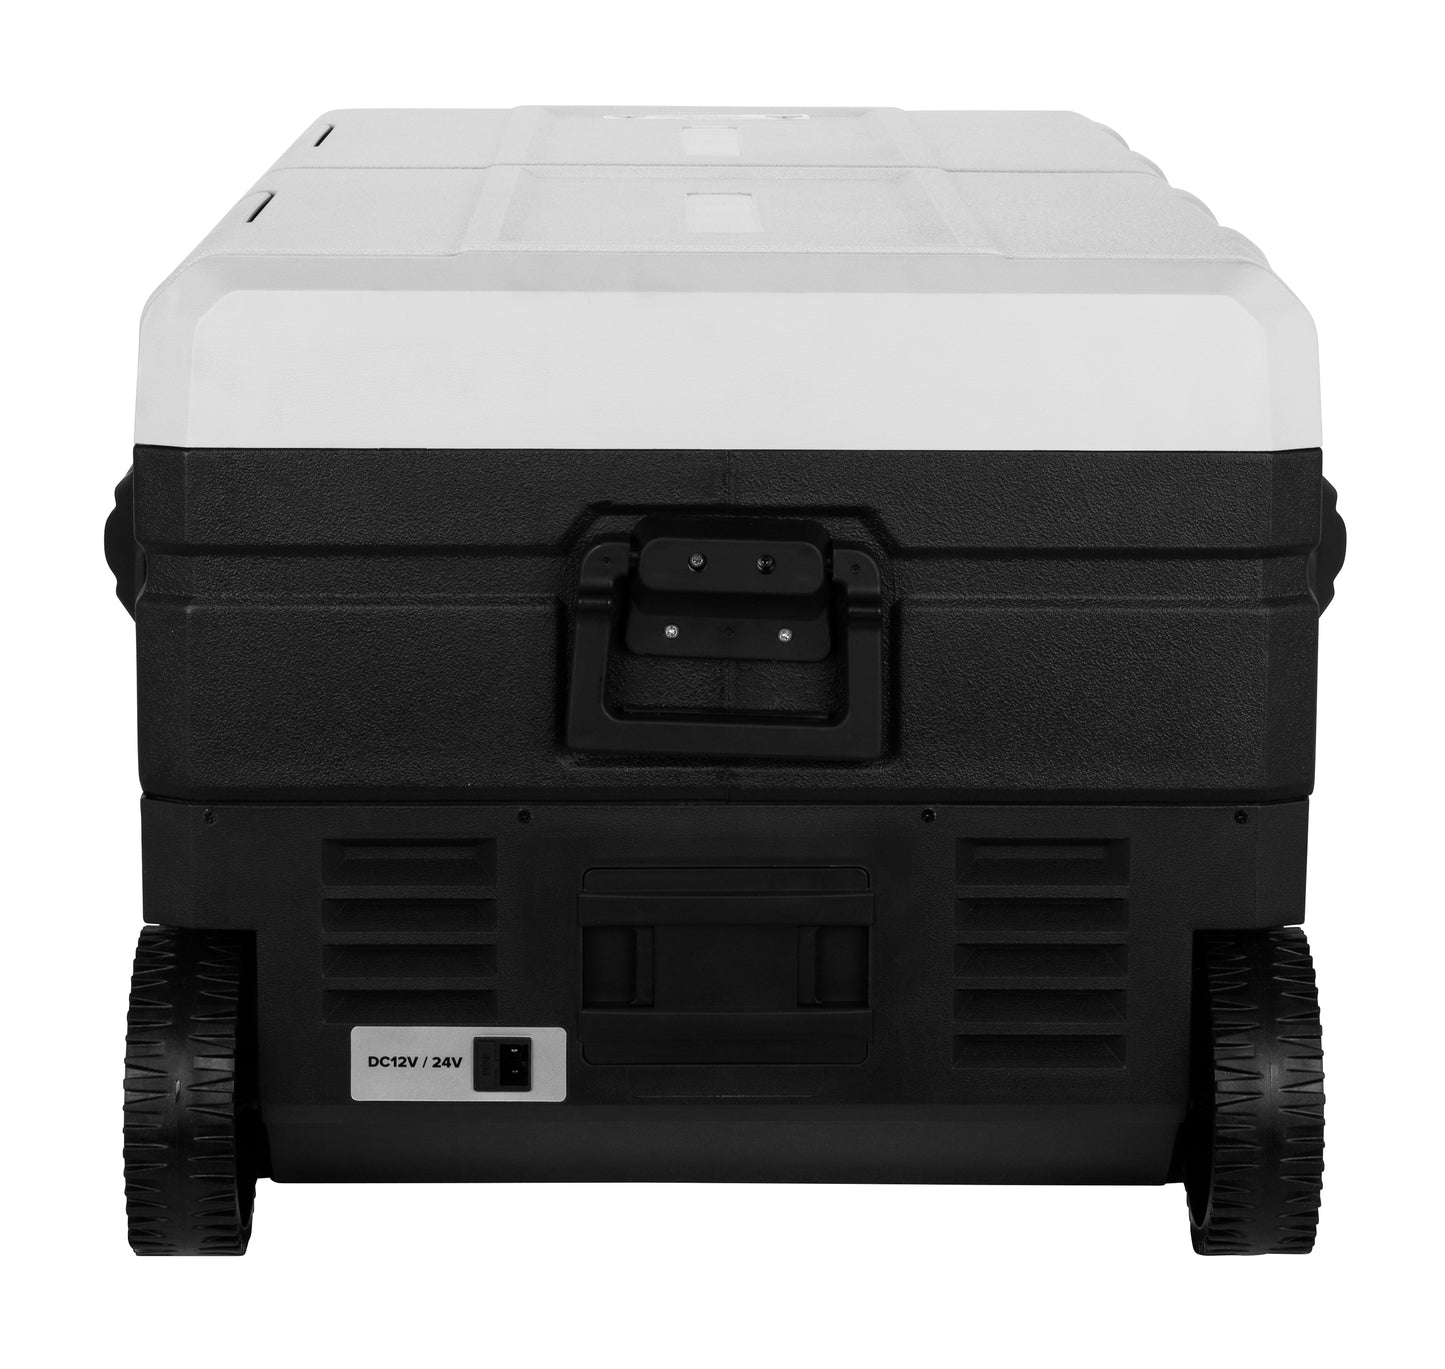 Camco Outdoors CAM-950 Portable Refrigerator / Freezer - 95 Liter